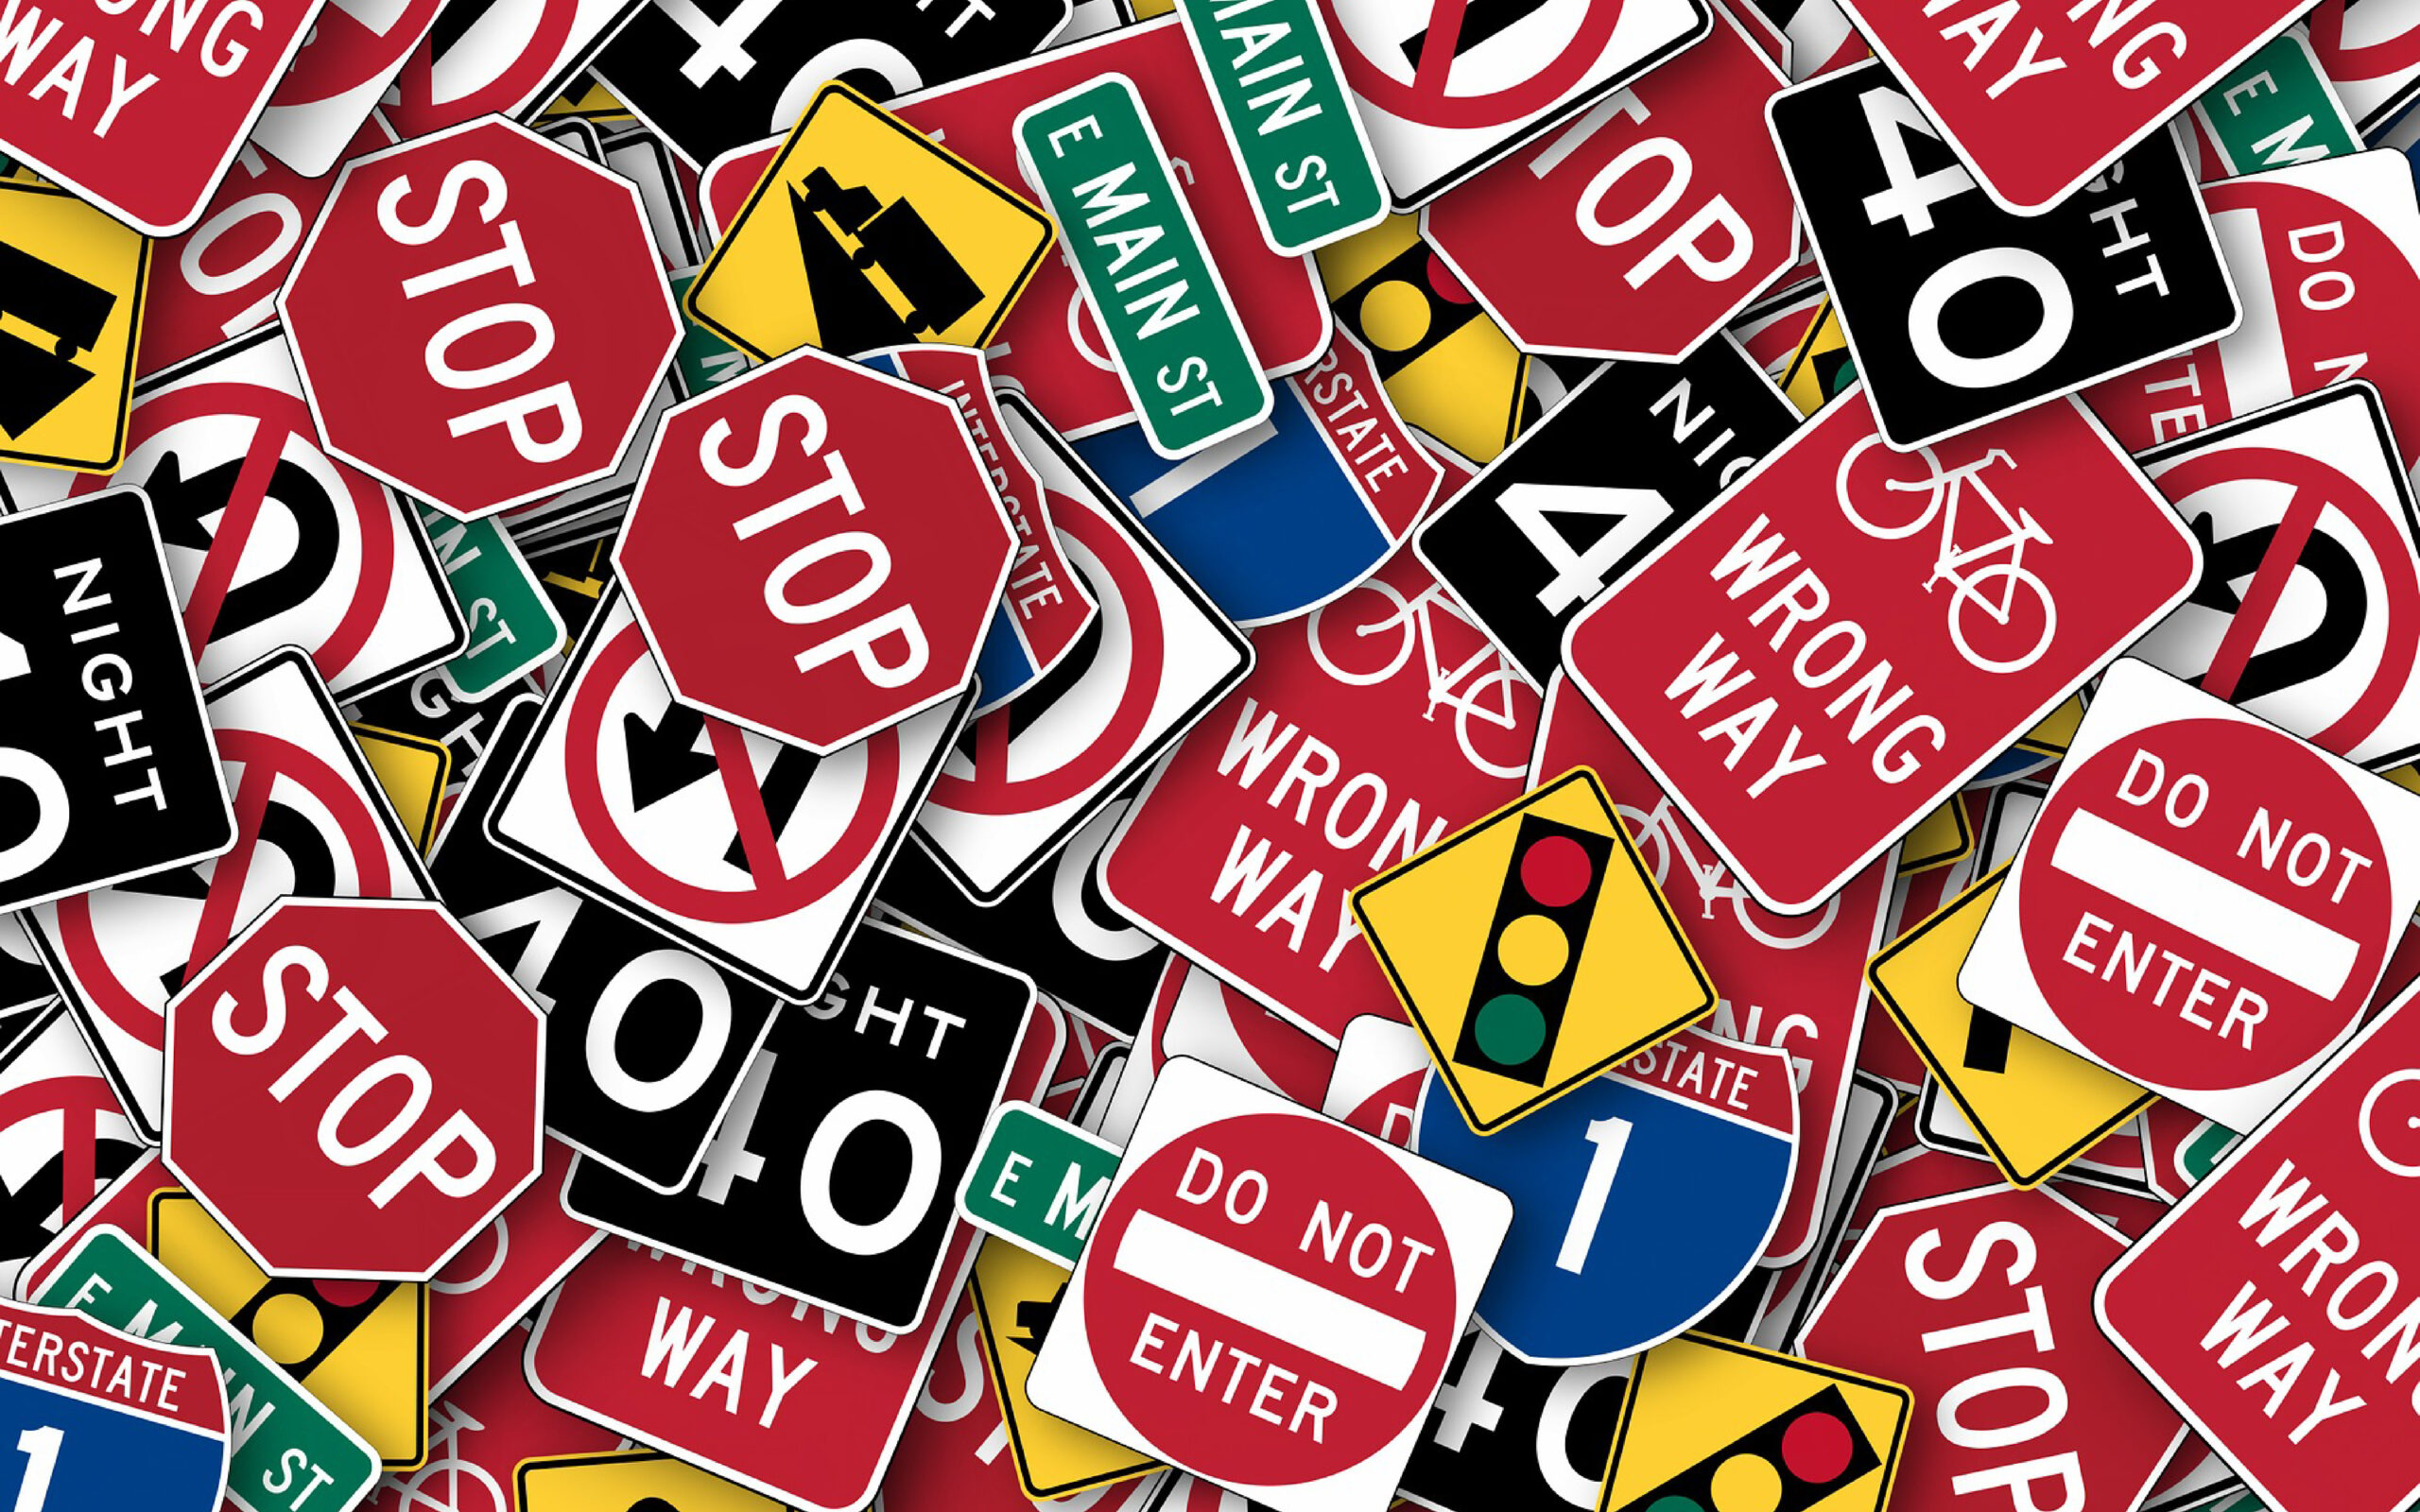 La guida ai cartelli stradali: tipologie e significati